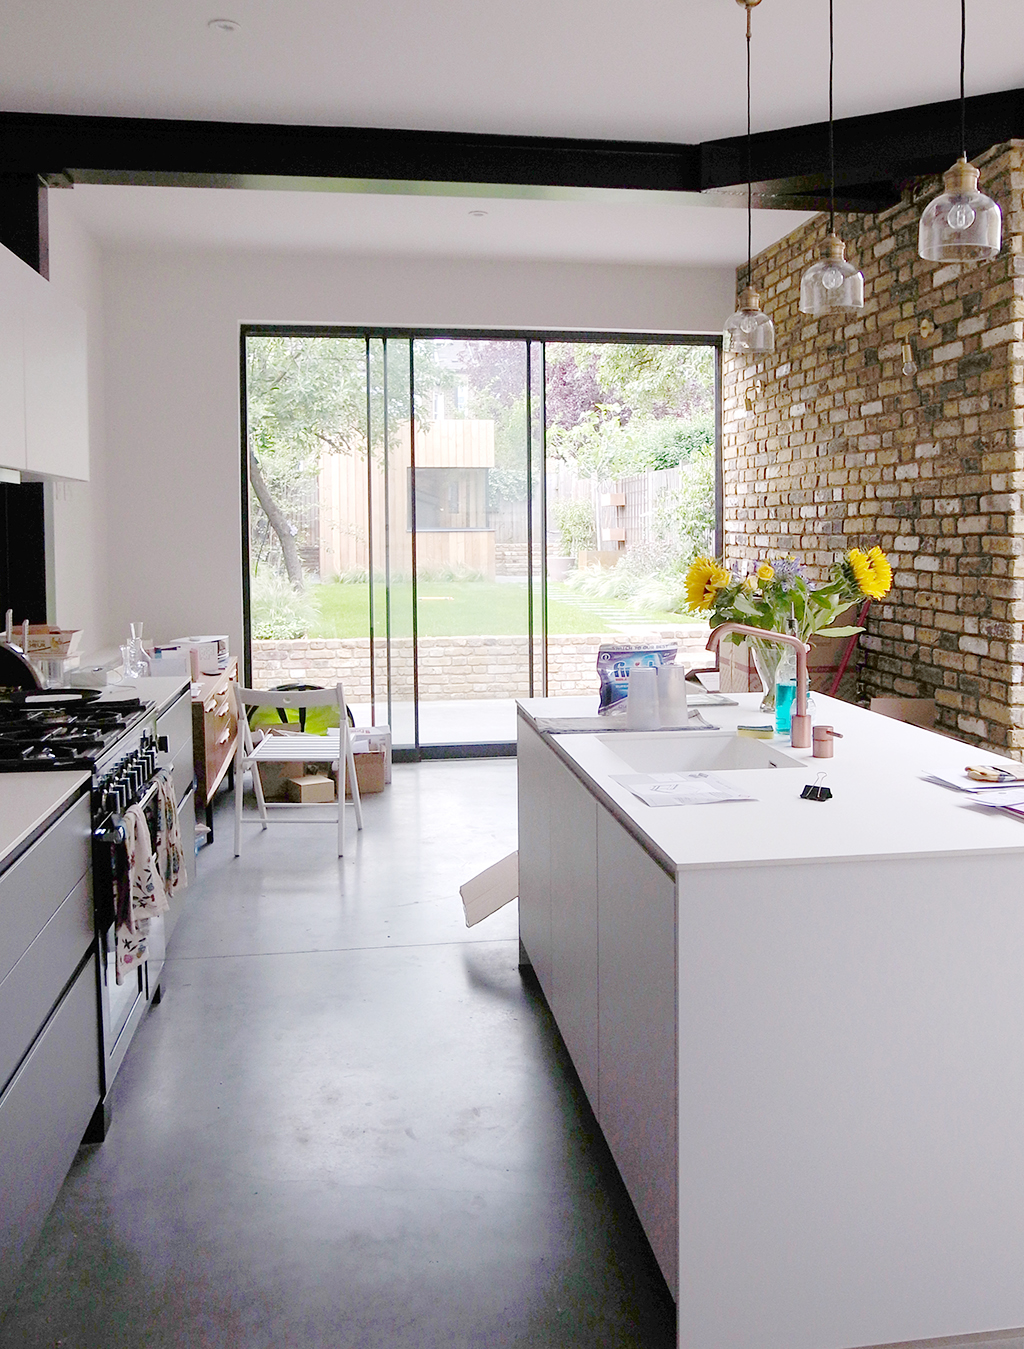 2018年7月に竣工したロンドンの住宅のキッチンダイニング・エリア。コンクリート・フロアのパティオと一続きになっていて、自由に行き来ができる